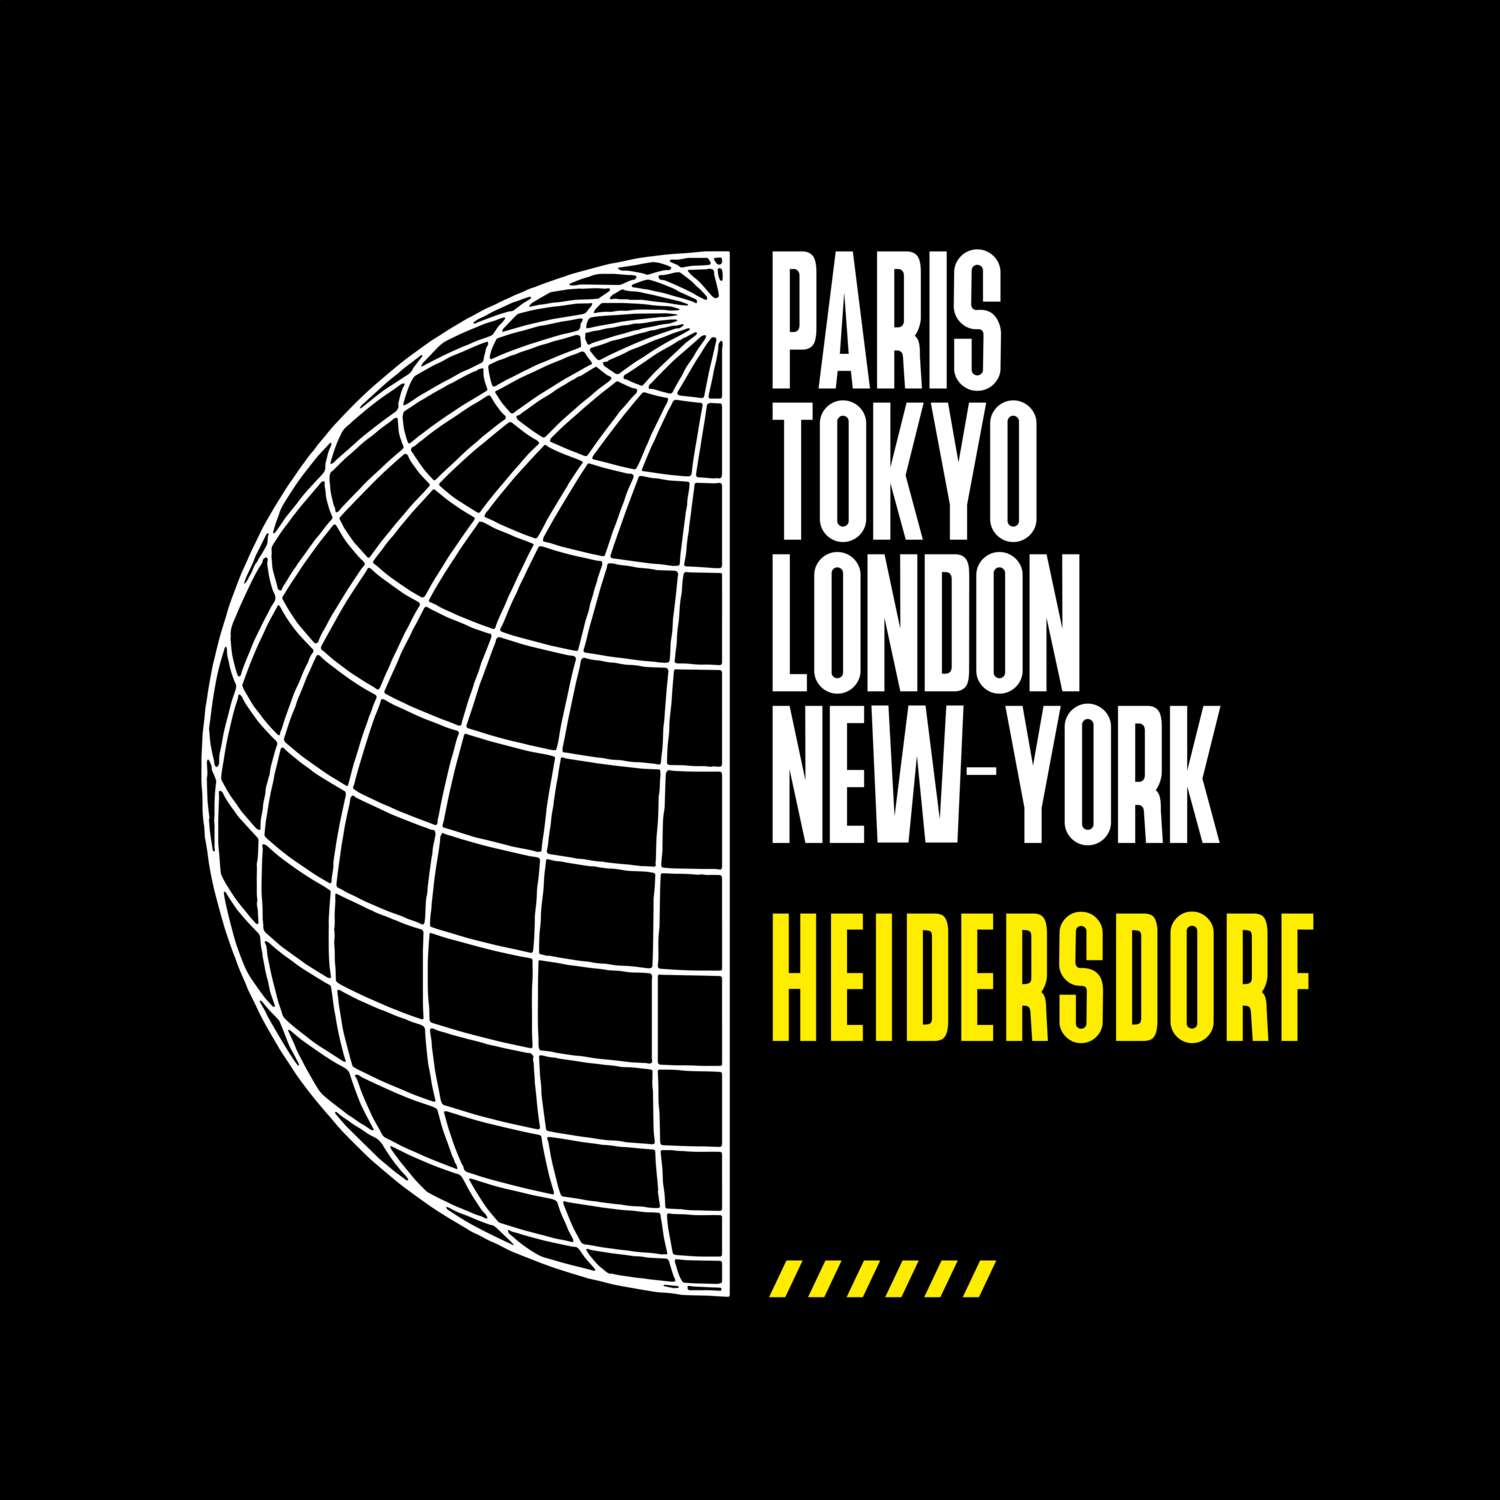 Heidersdorf T-Shirt »Paris Tokyo London«